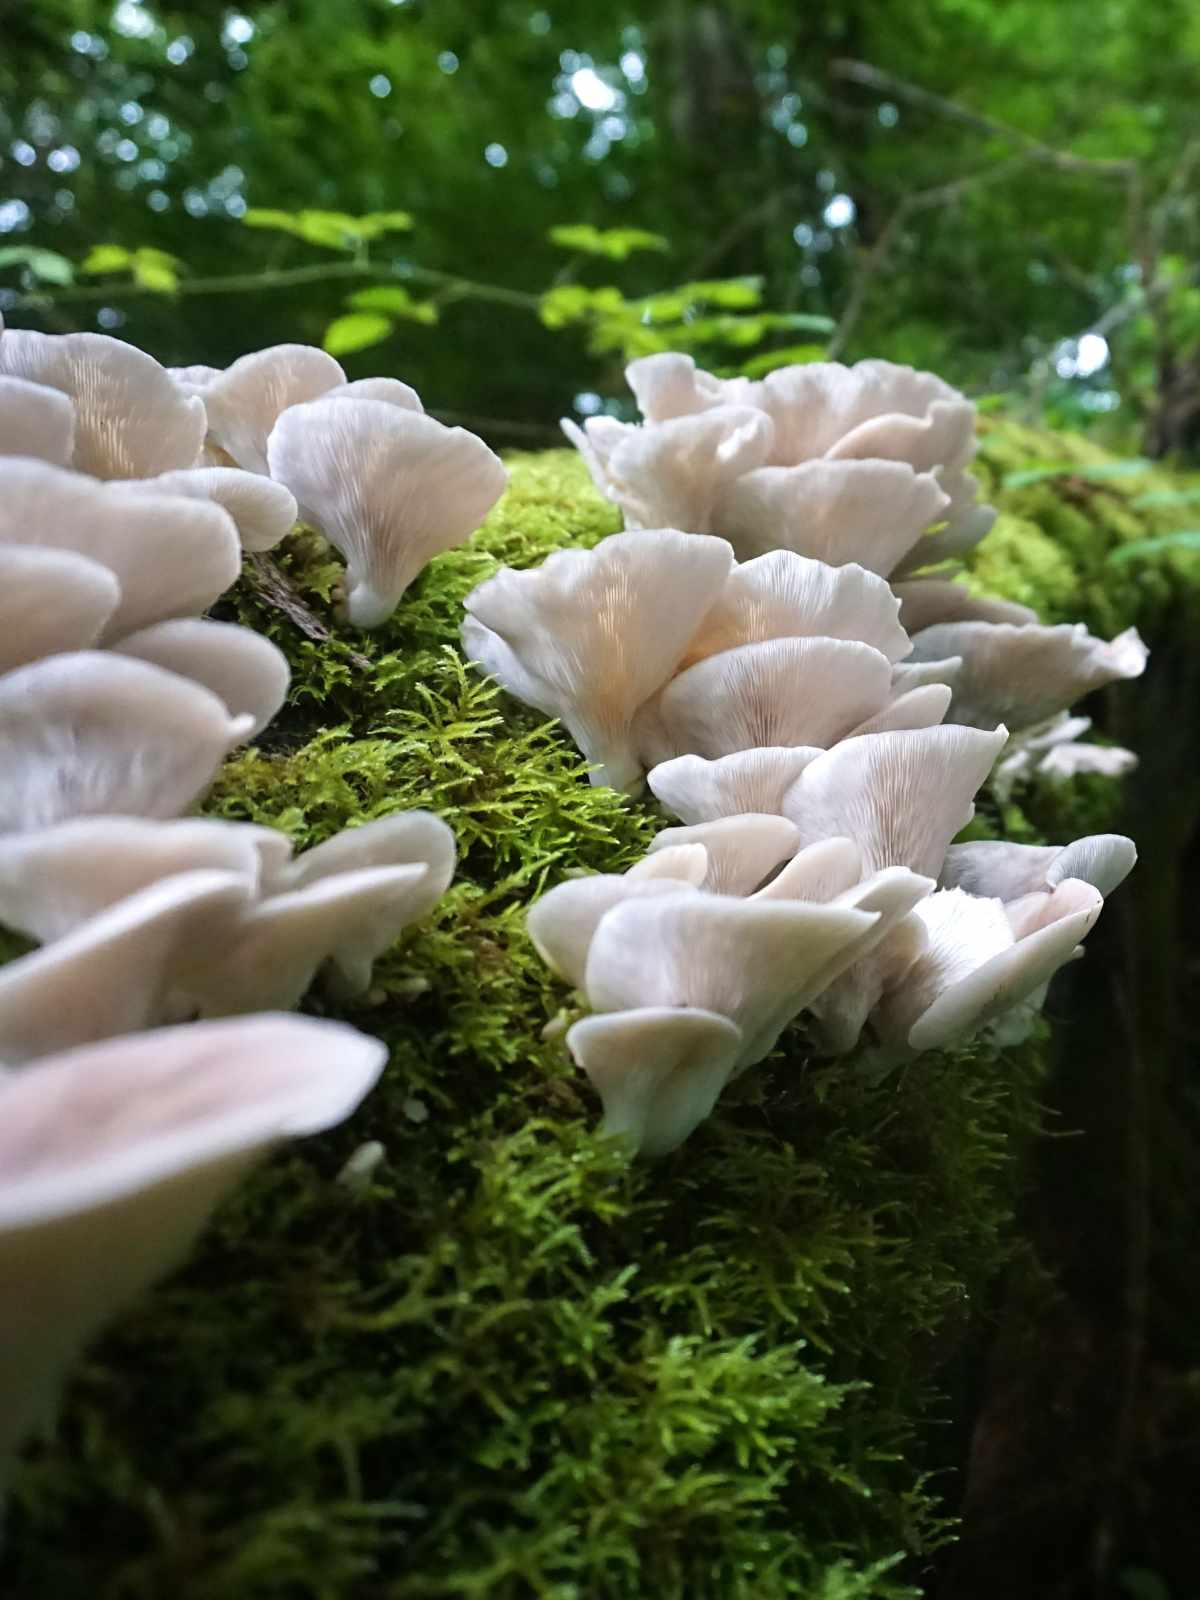 golden oyster mushrooms